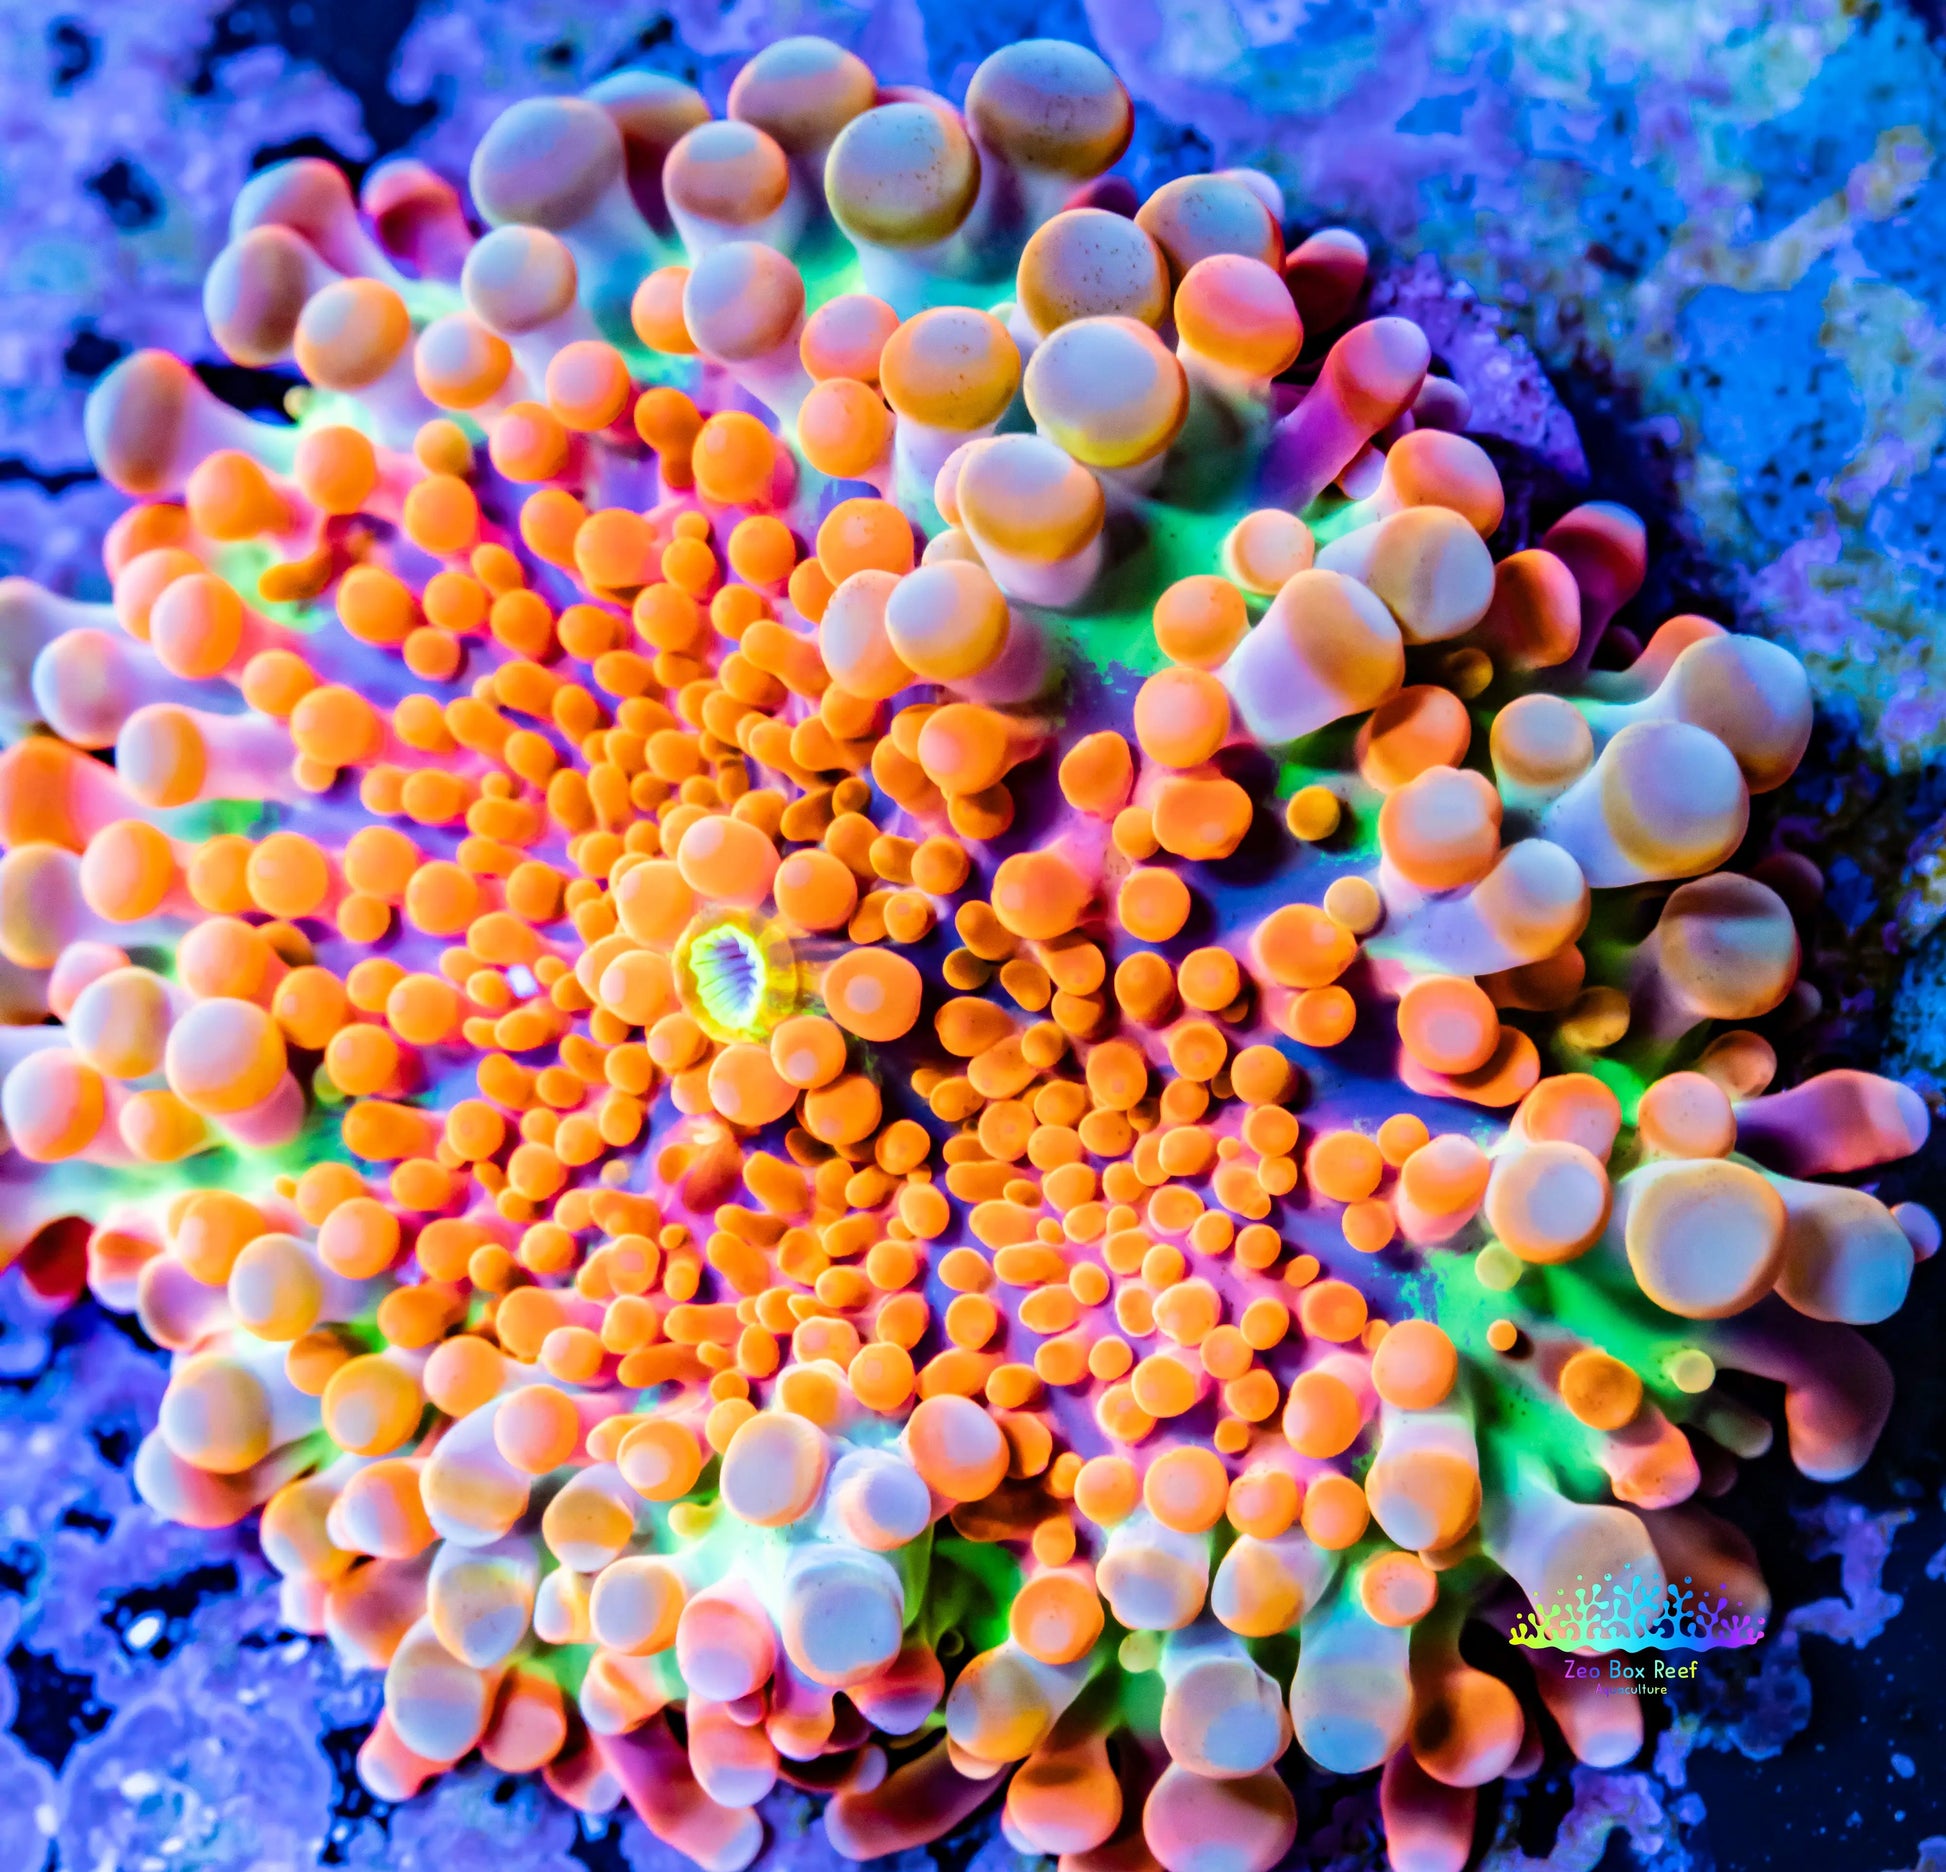 Soft Coral- Ultra Orange Ricordea  WYSIWYG 2.5cm Soft Coral- Ultra Orange Ricordea  WYSIWYG 2.5cm Soft Coral Soft Coral- Ultra Orange Ricordea  WYSIWYG 2.5cm Zeo Box Reef